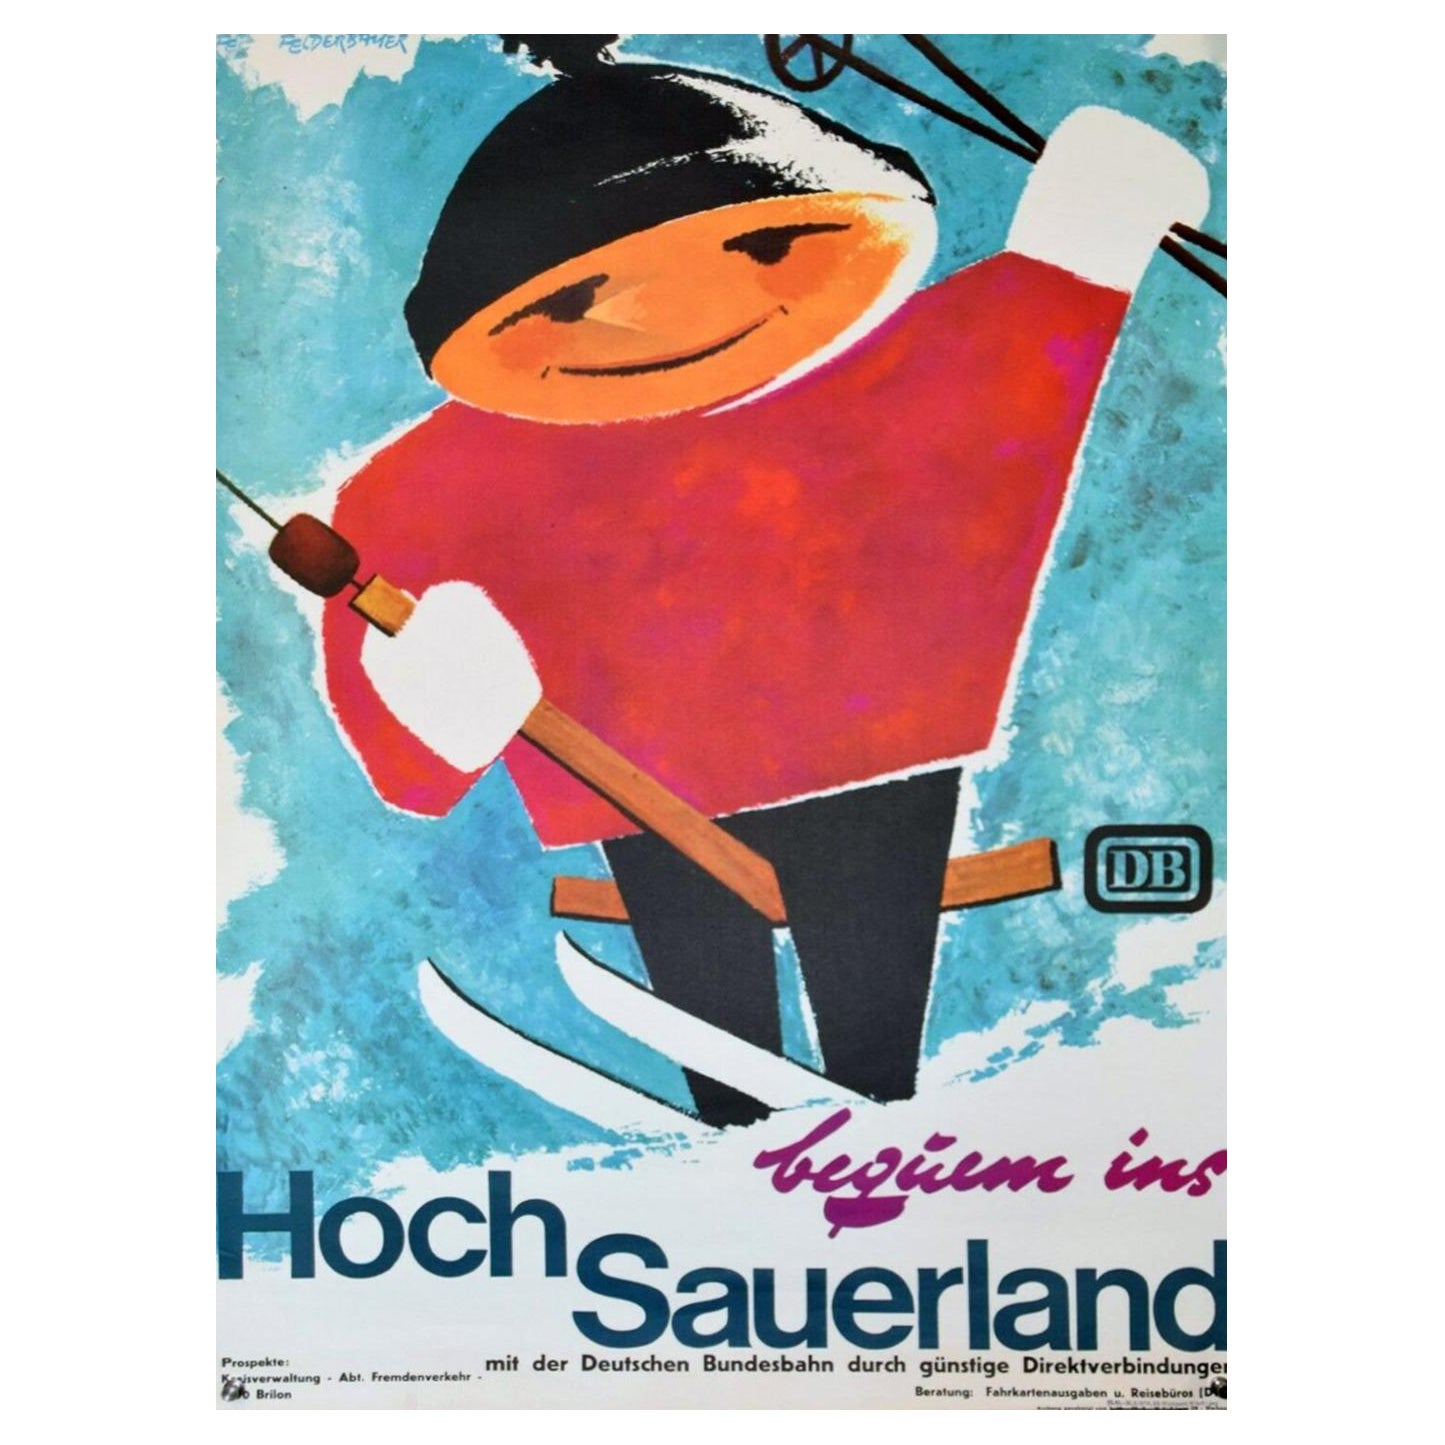 1974 Hochsauerland Ski - DB Railway Original Vintage Poster  For Sale